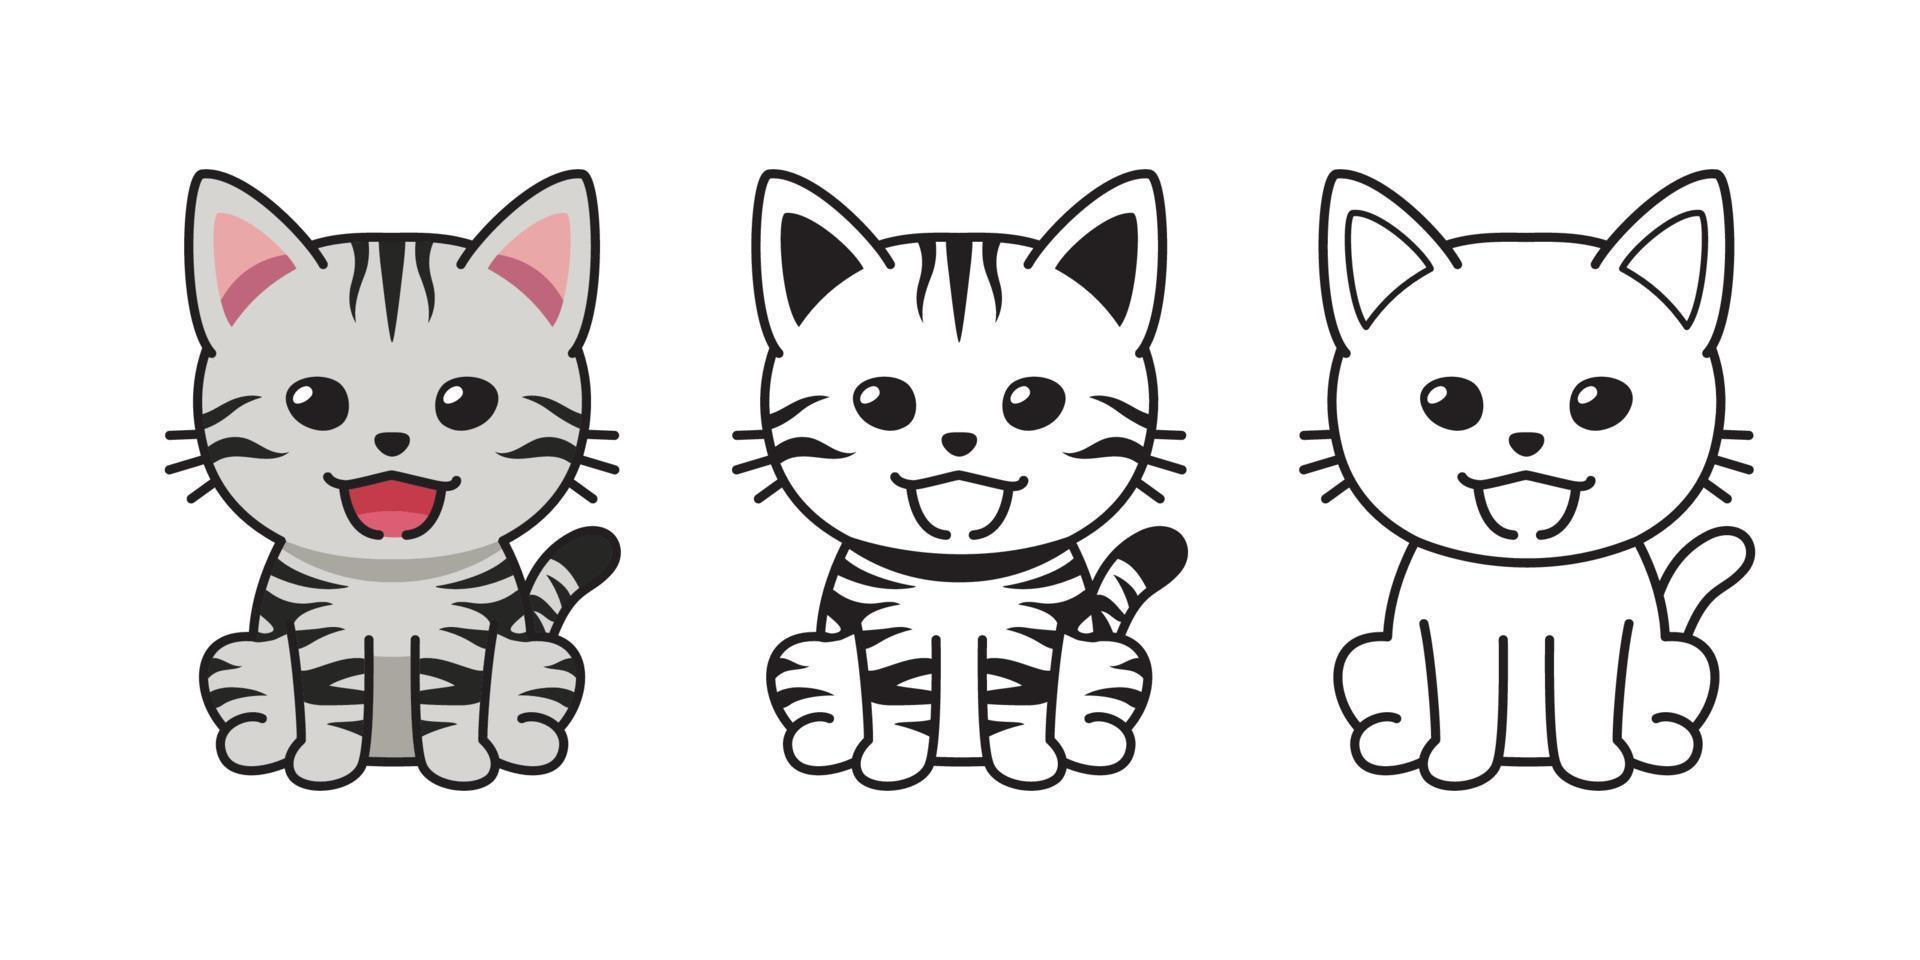 conjunto de personagem de desenho vetorial gato curto americano vetor